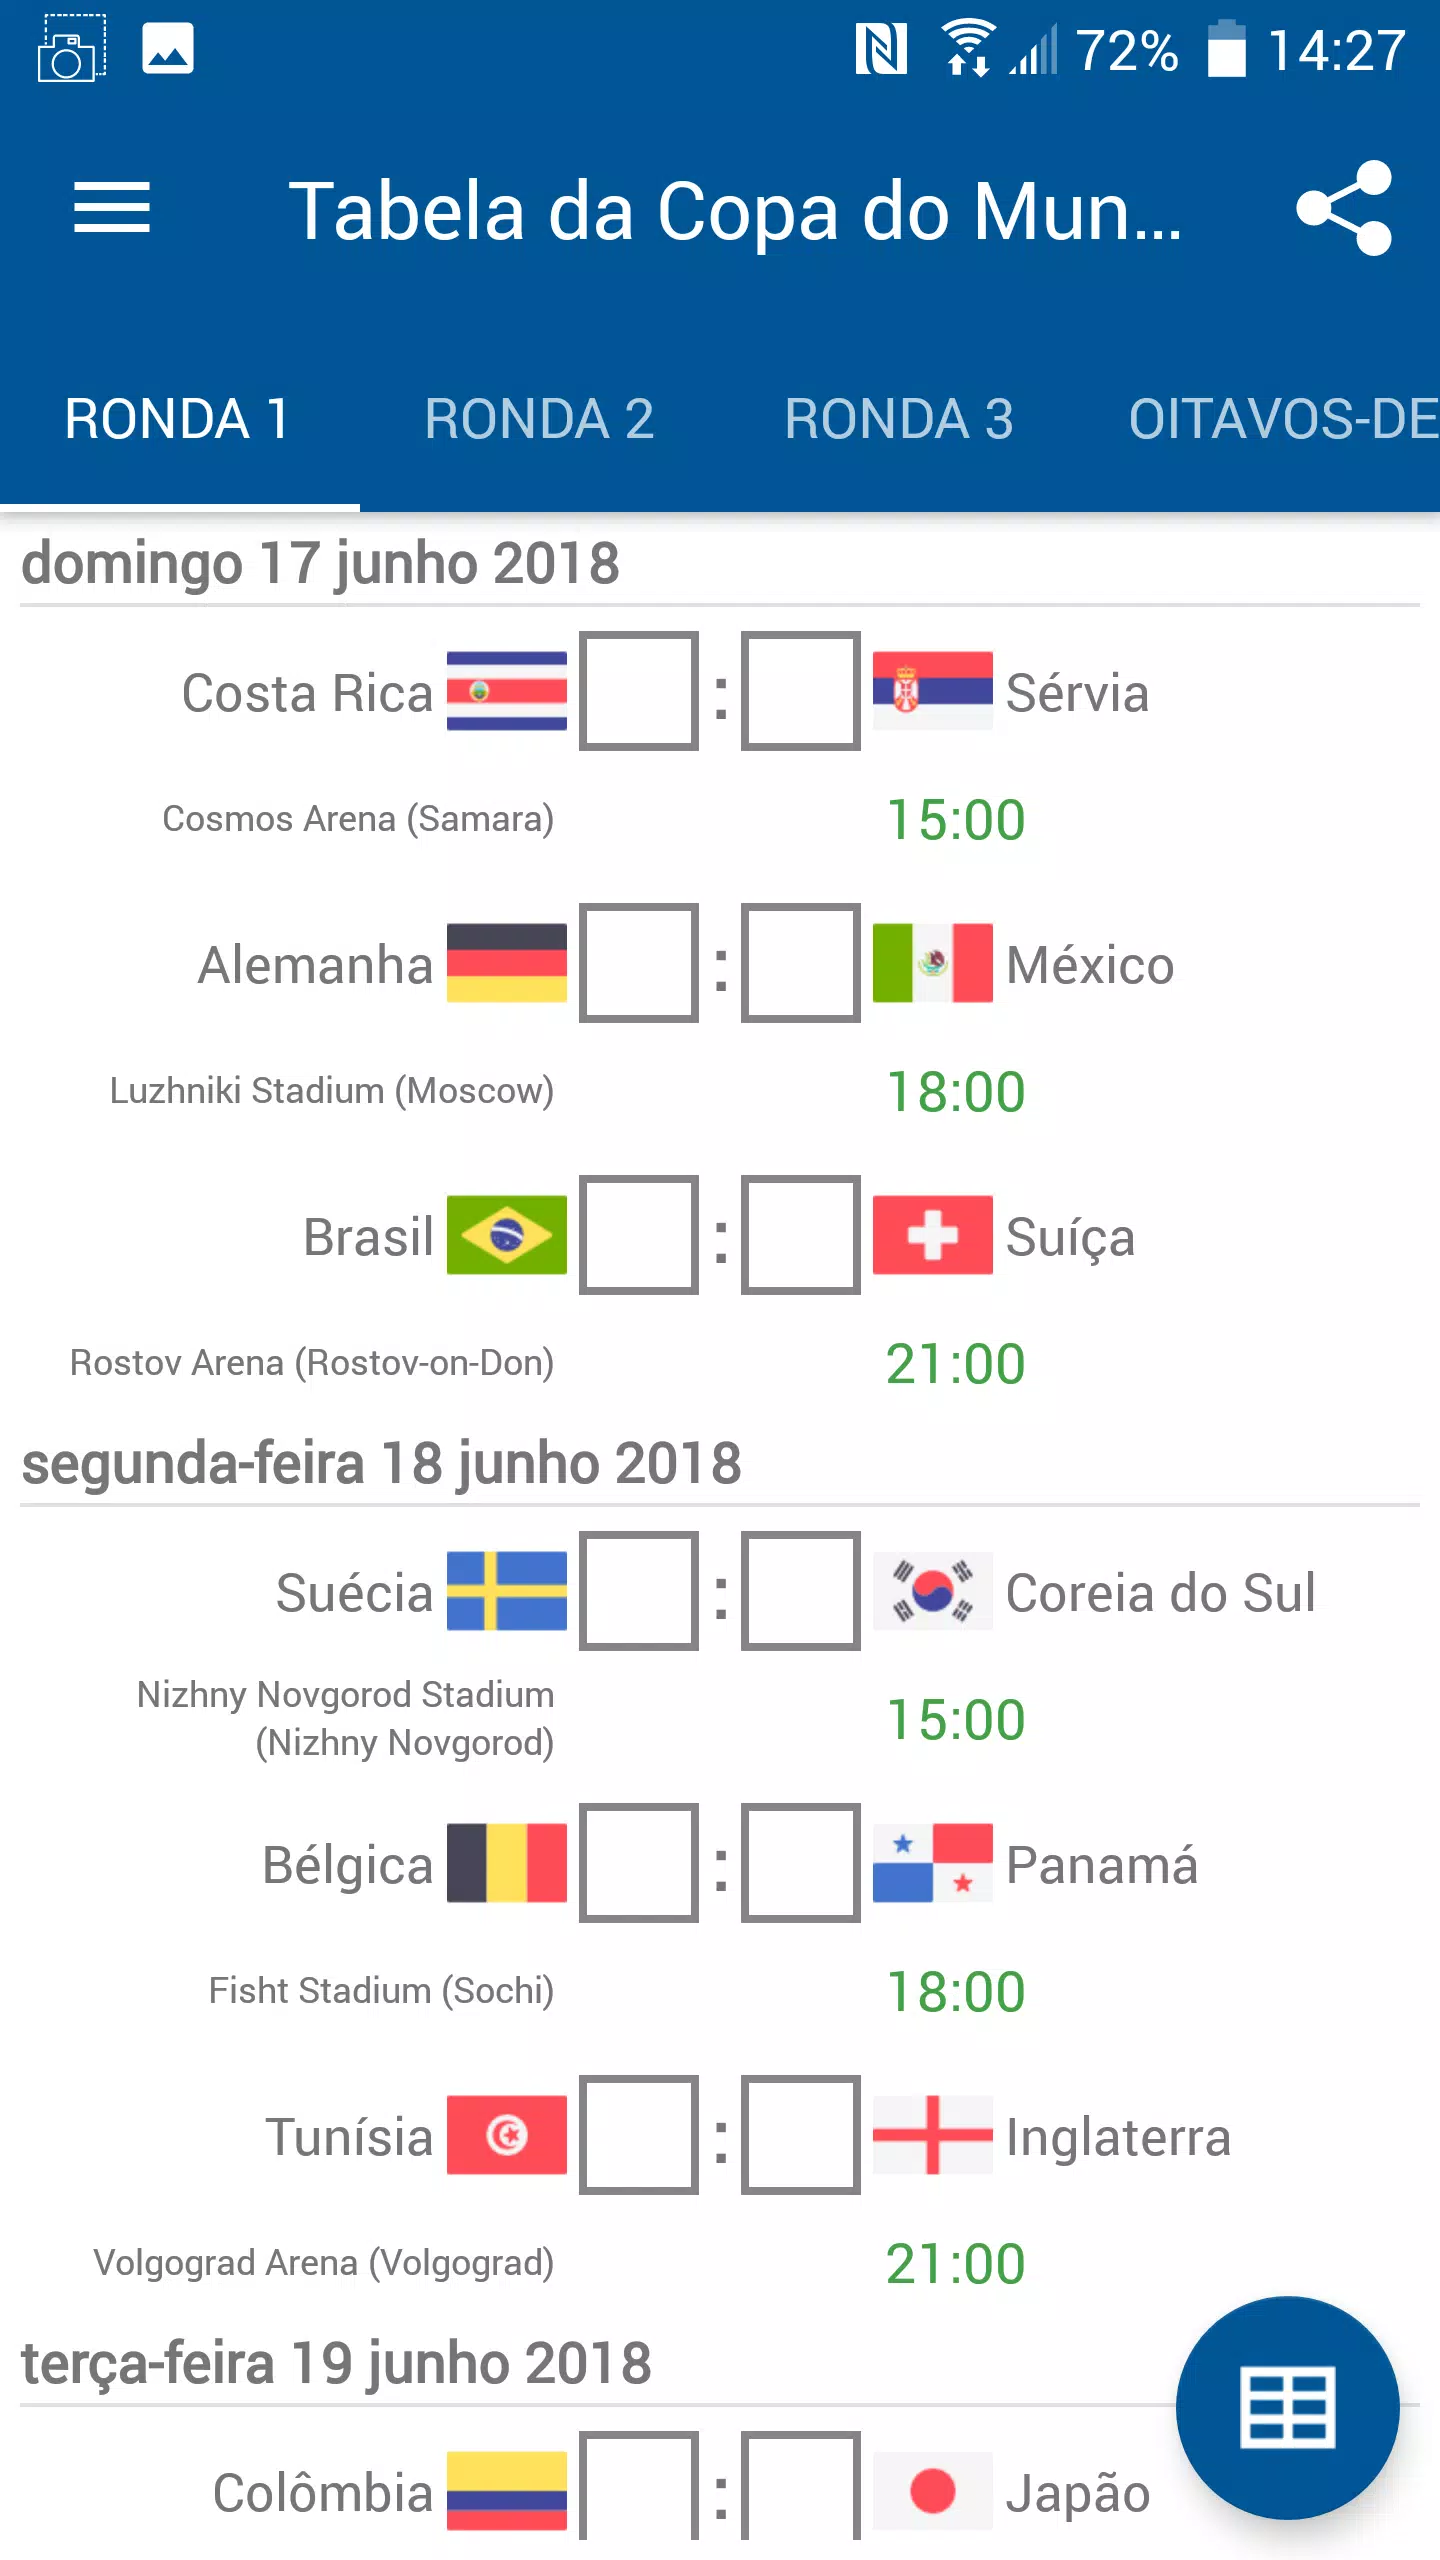 GitHub - AlexandreAkao/Tabela-Copa-do-Mundo-2018: Tabela da copa do Mundo  2018